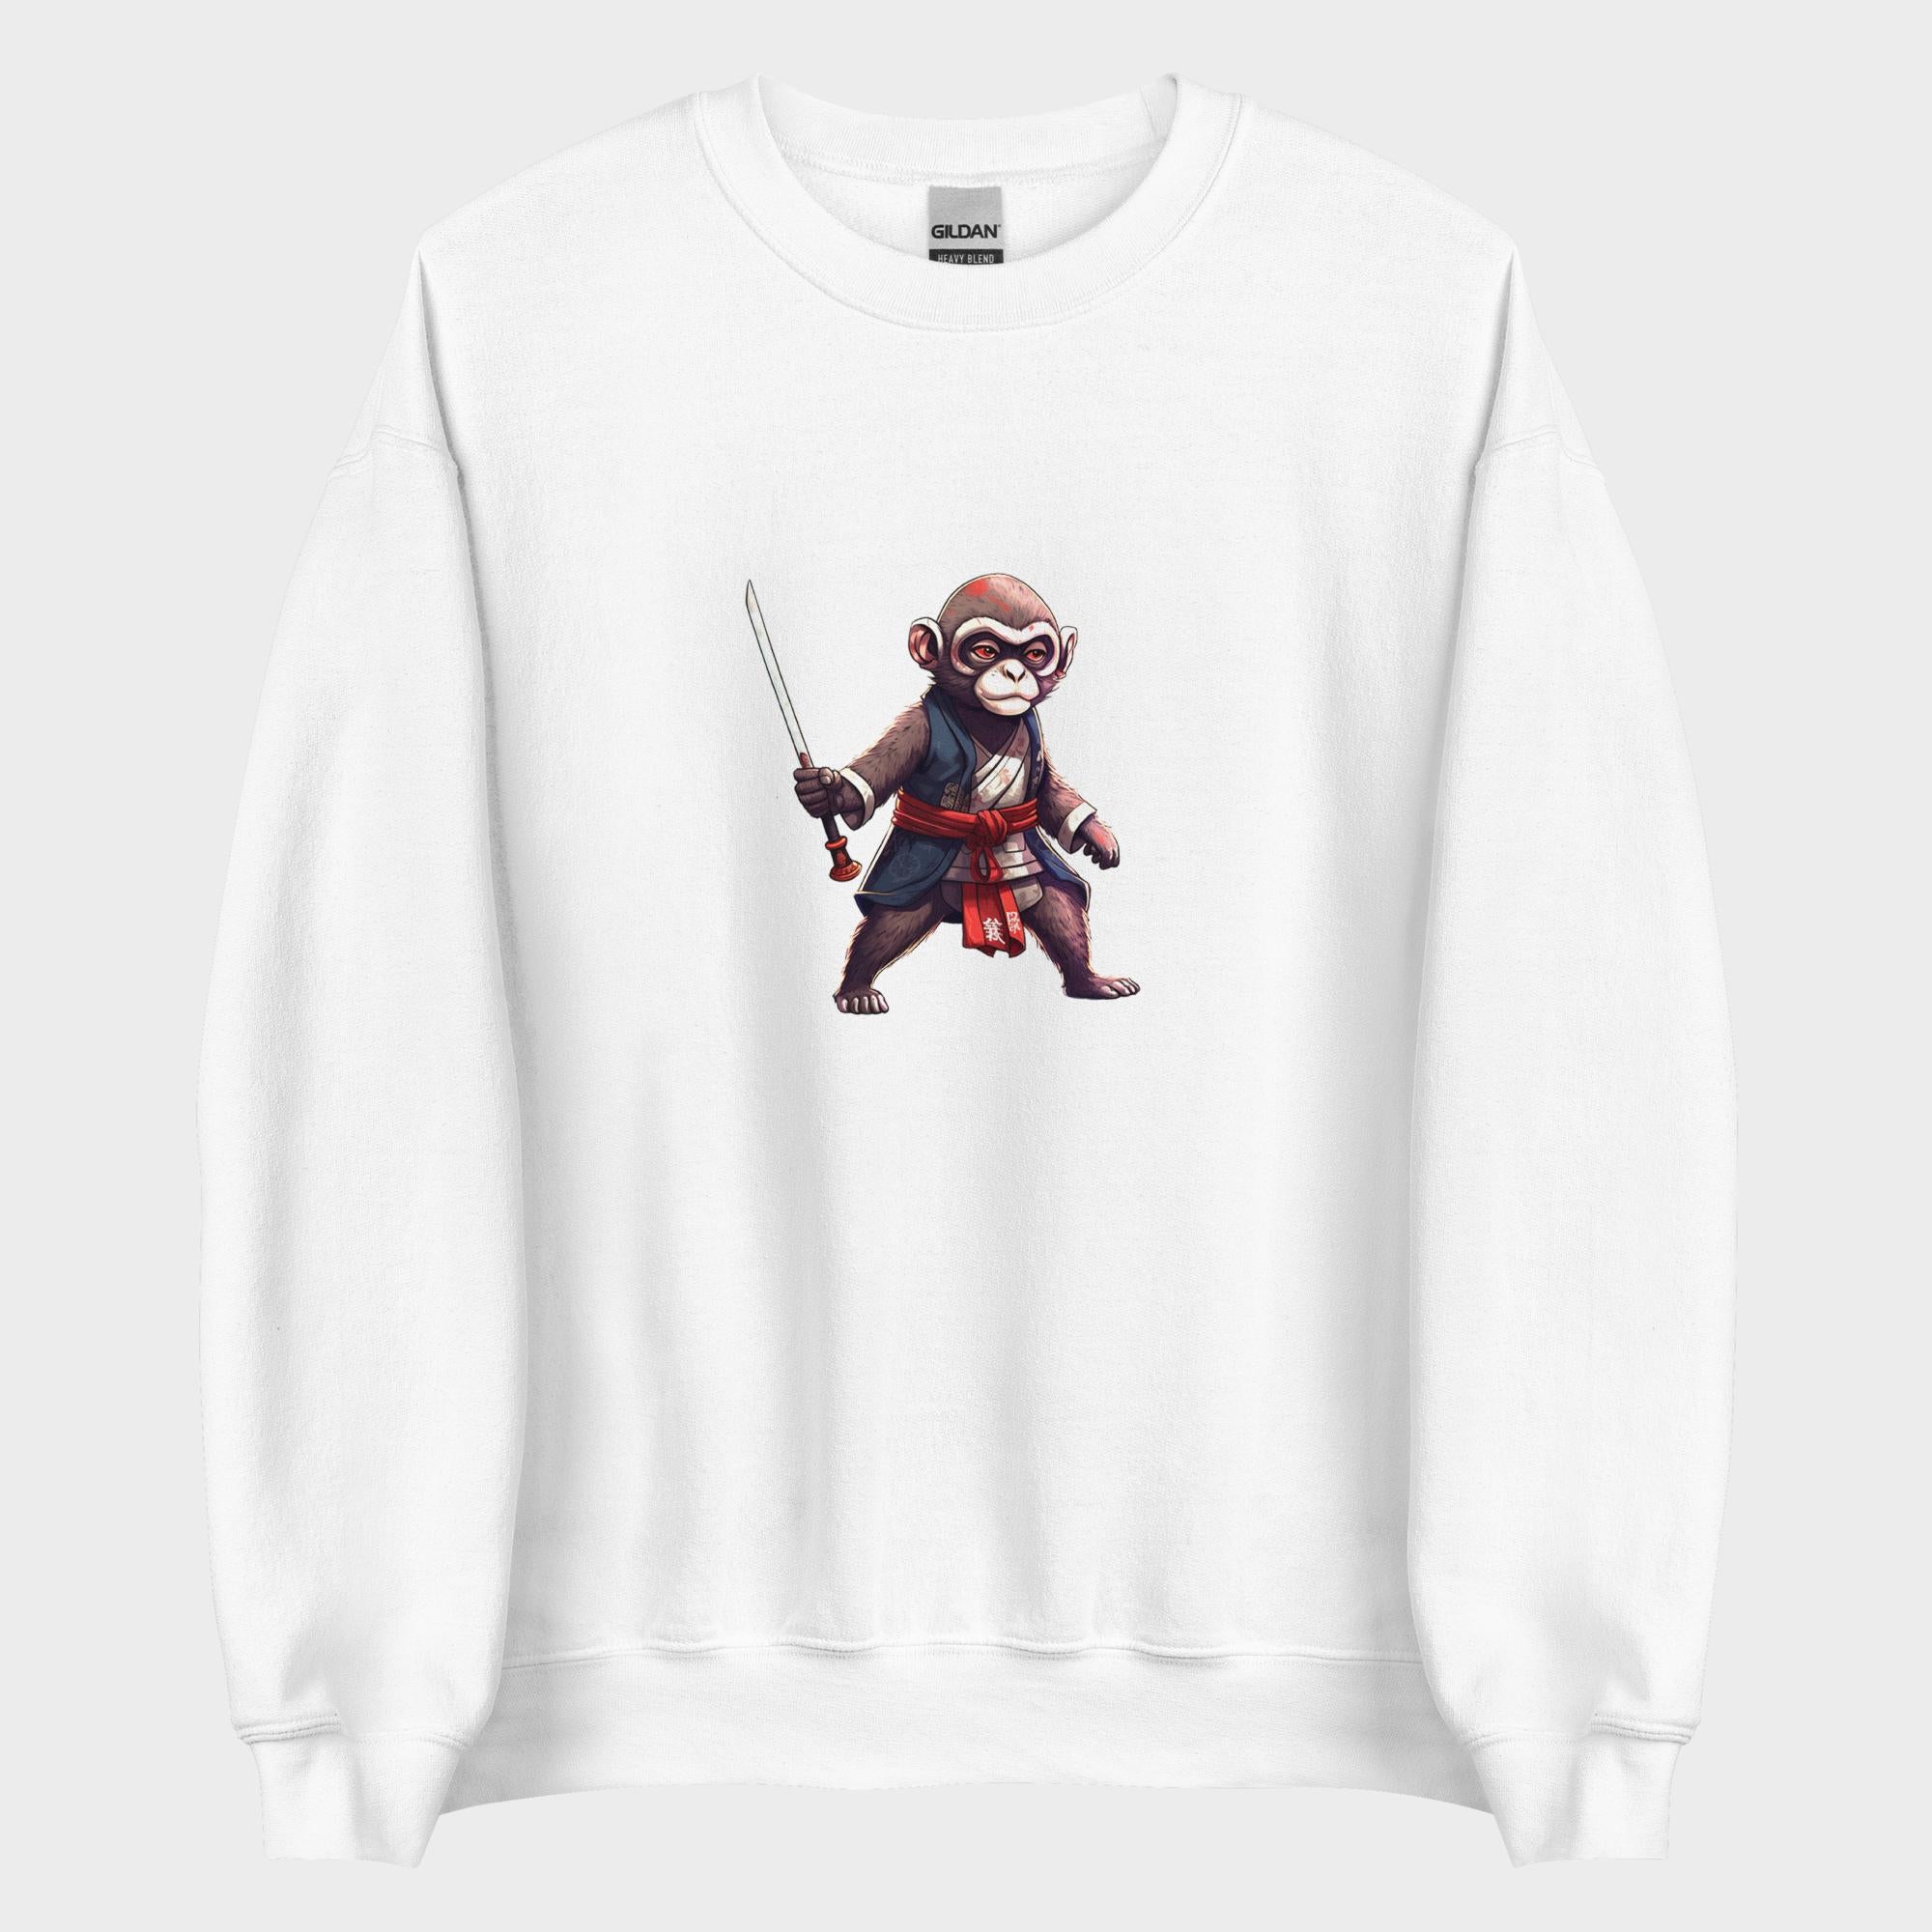 Monkey Business - Sweatshirt